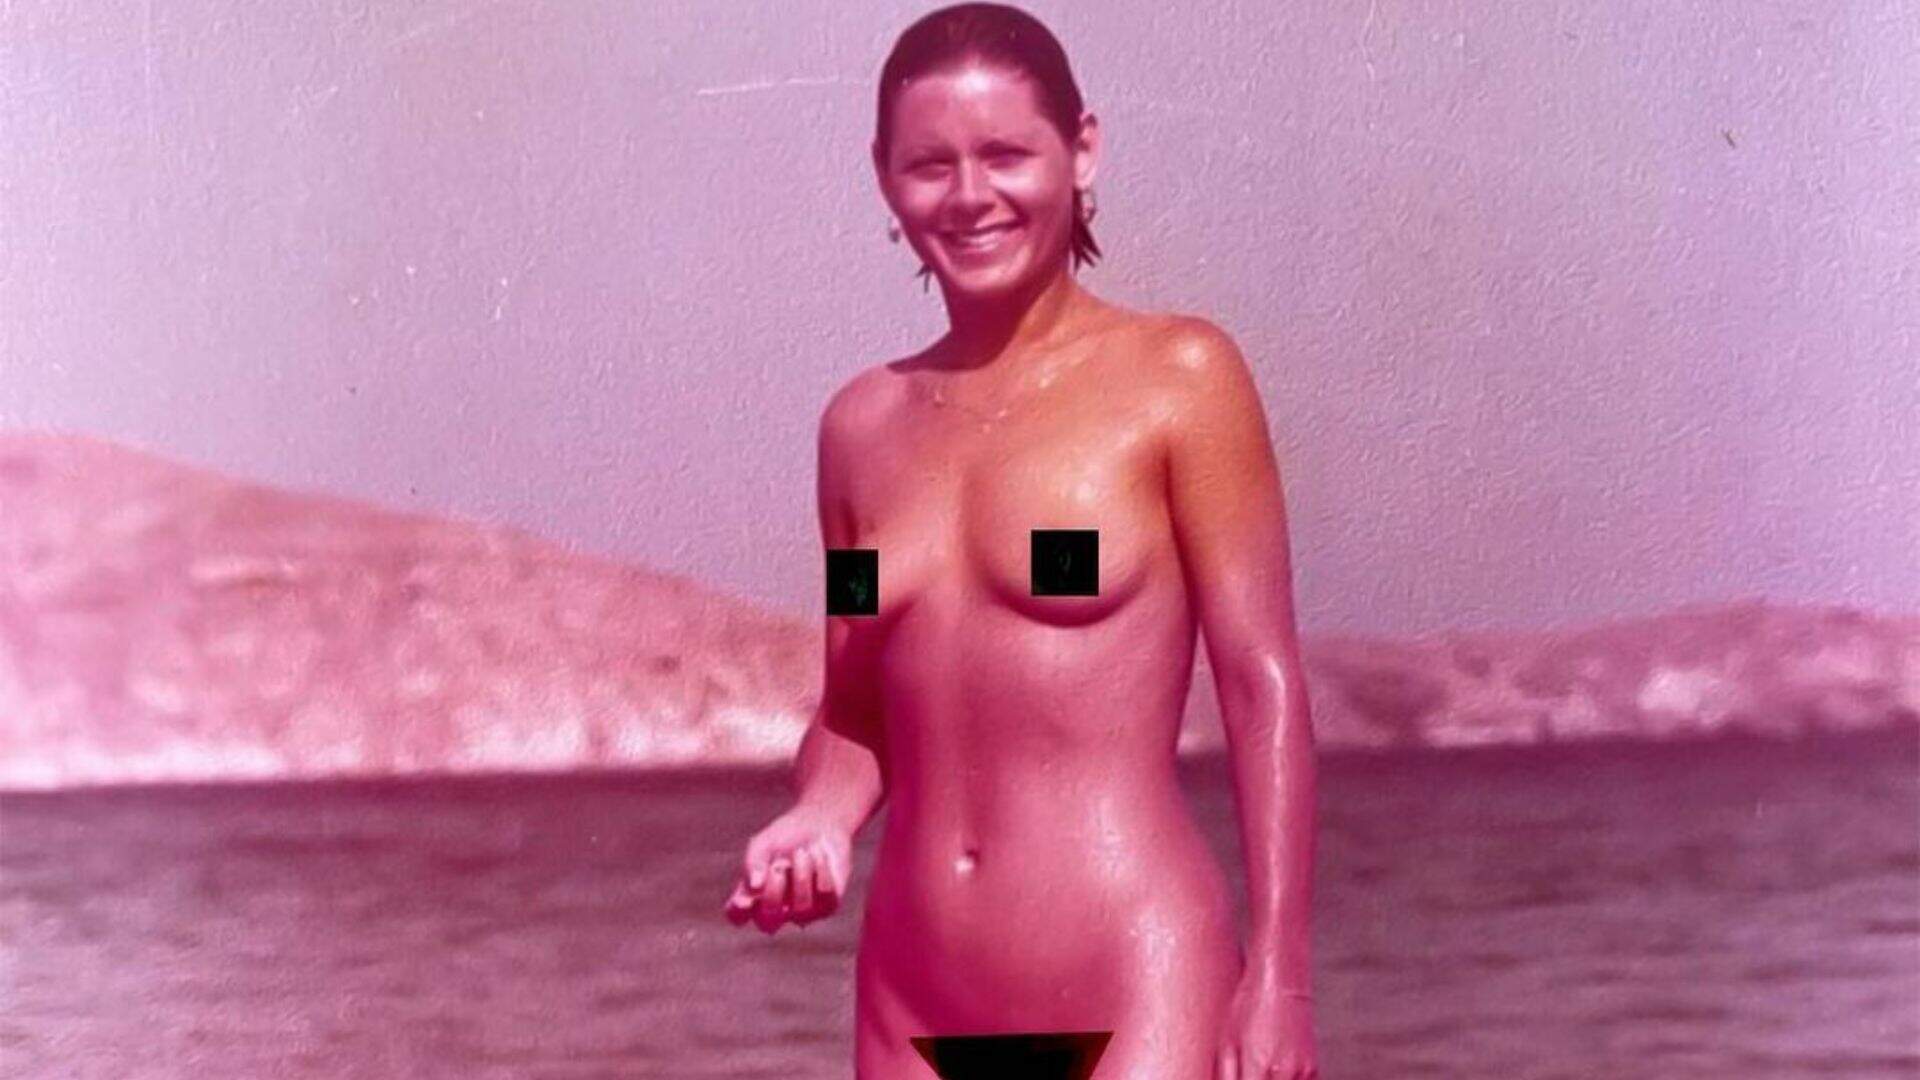 Vera Fischer compartilha clique em praia de nudismo e reclama de censura: “Patético” - Metropolitana FM